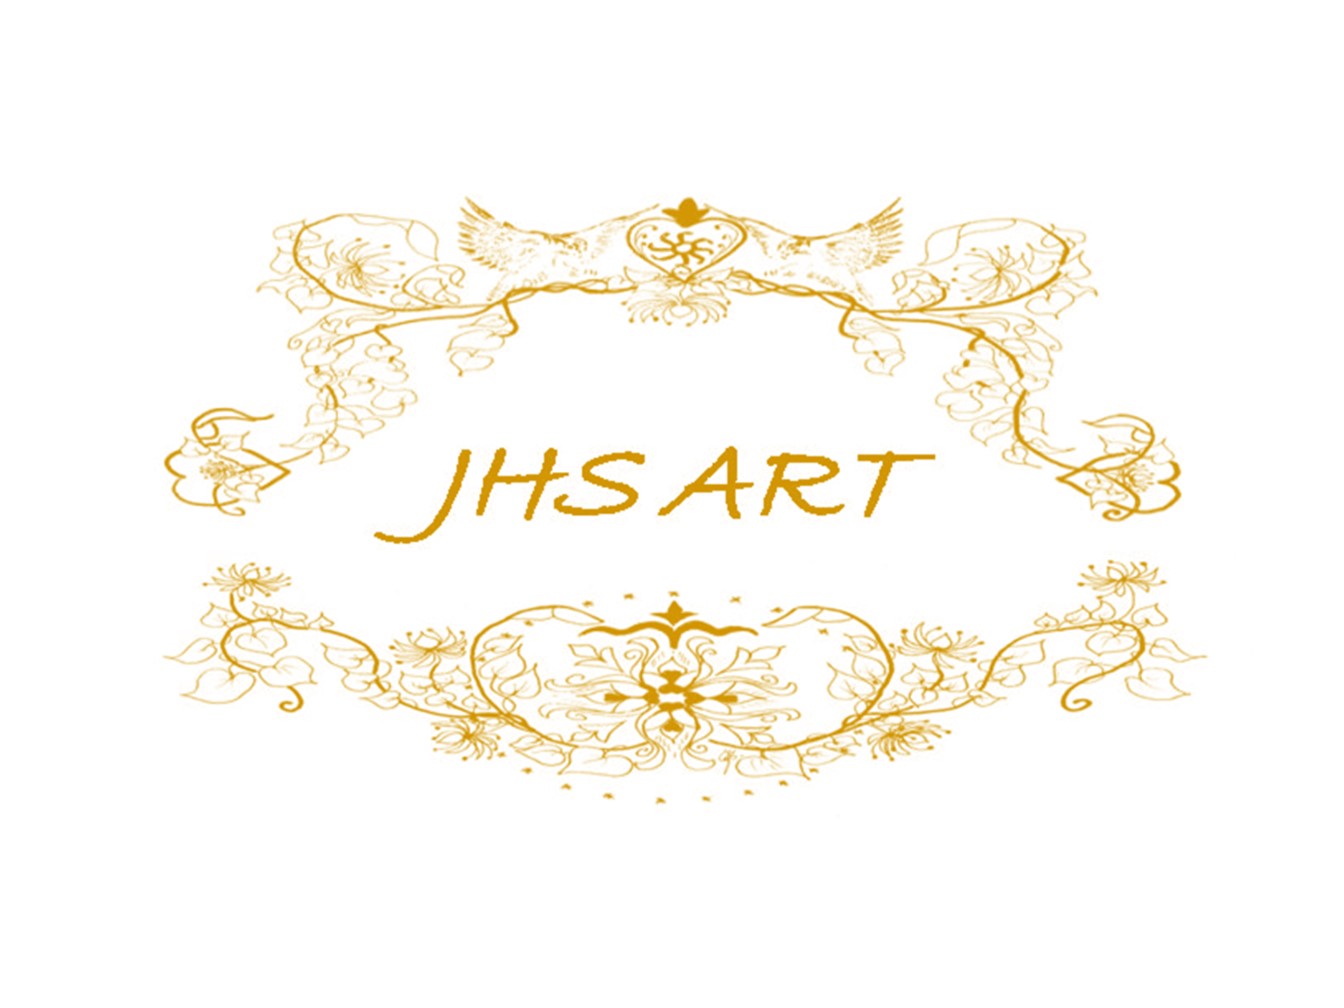 JHS ART